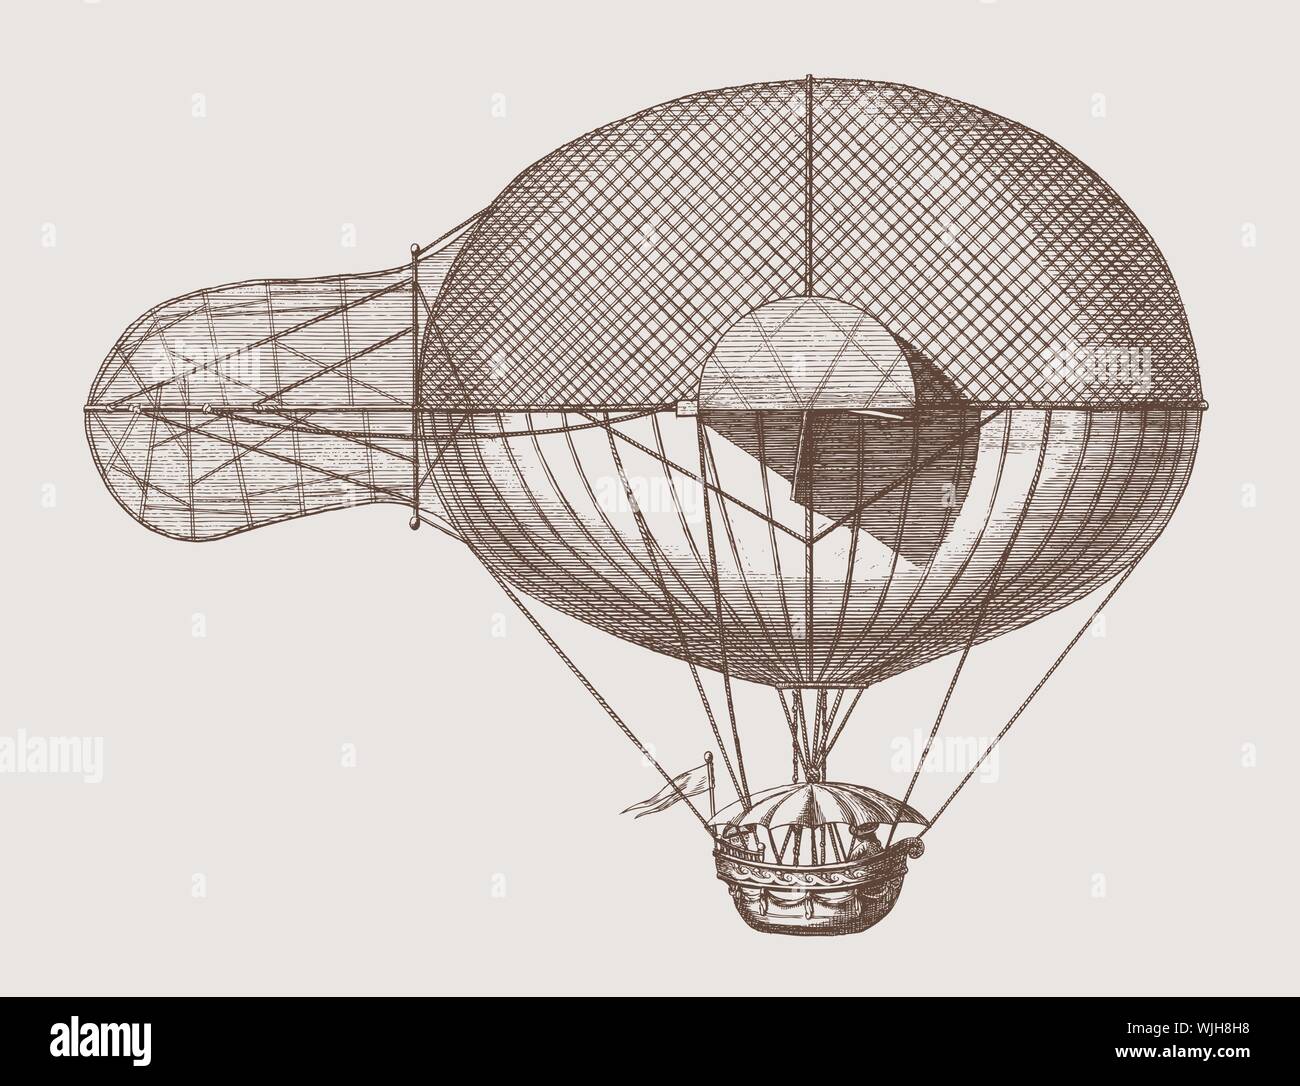 Ballon aérostat historique avec des appareils de navigation. lllustration après une gravure du 18ème siècle. Dans les couches modifiable Illustration de Vecteur